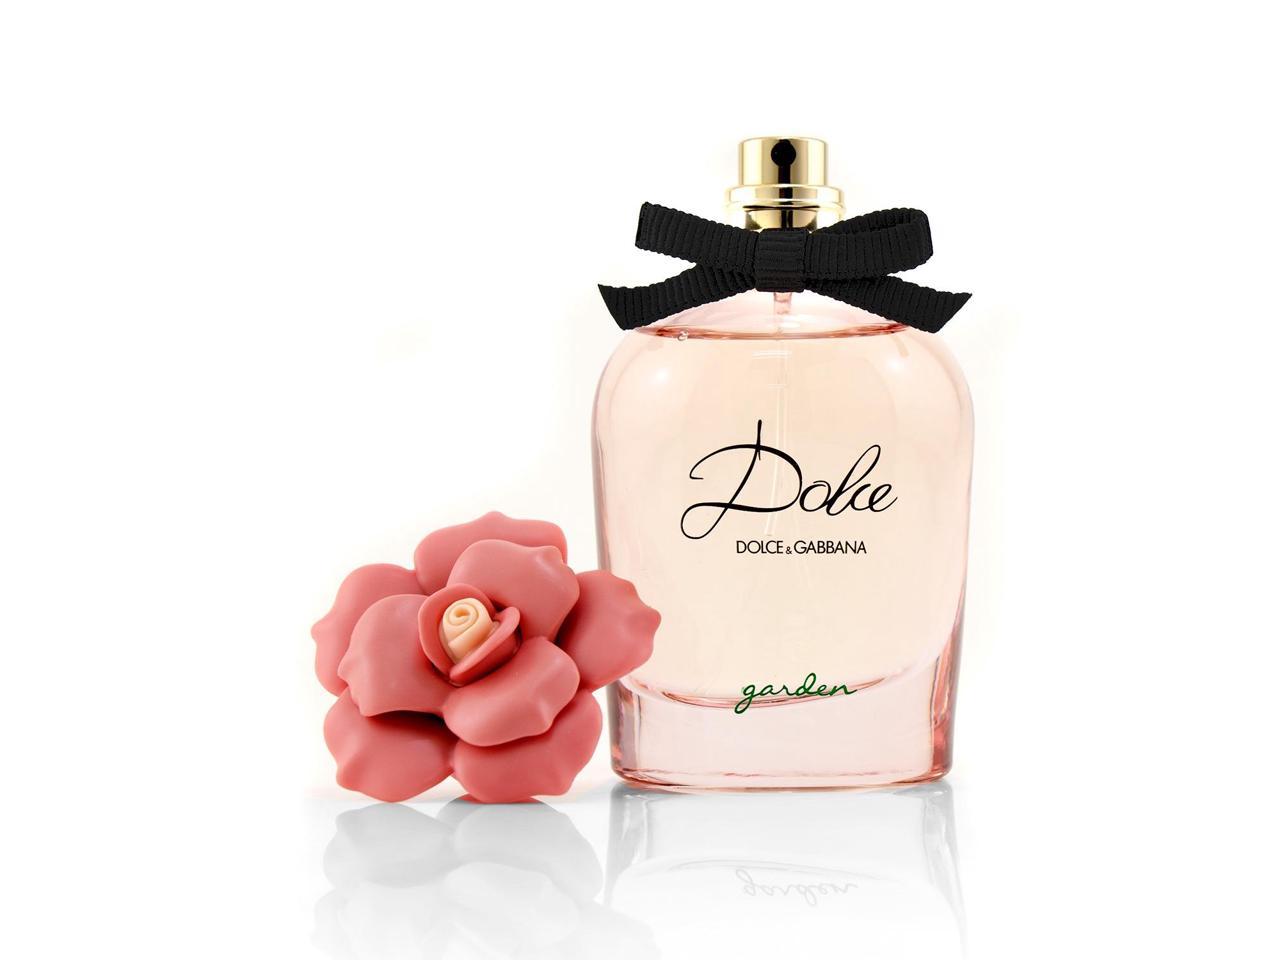 Дольче габбана парфюм новинка. Dolce Gabbana Garden Eau de Parfum. Dolce & Gabbana Dolce Garden Eau de Parfum. Dolce Gabbana Dolce Garden 75 ml. Dolce & Gabbana Dolce Garden тестер.